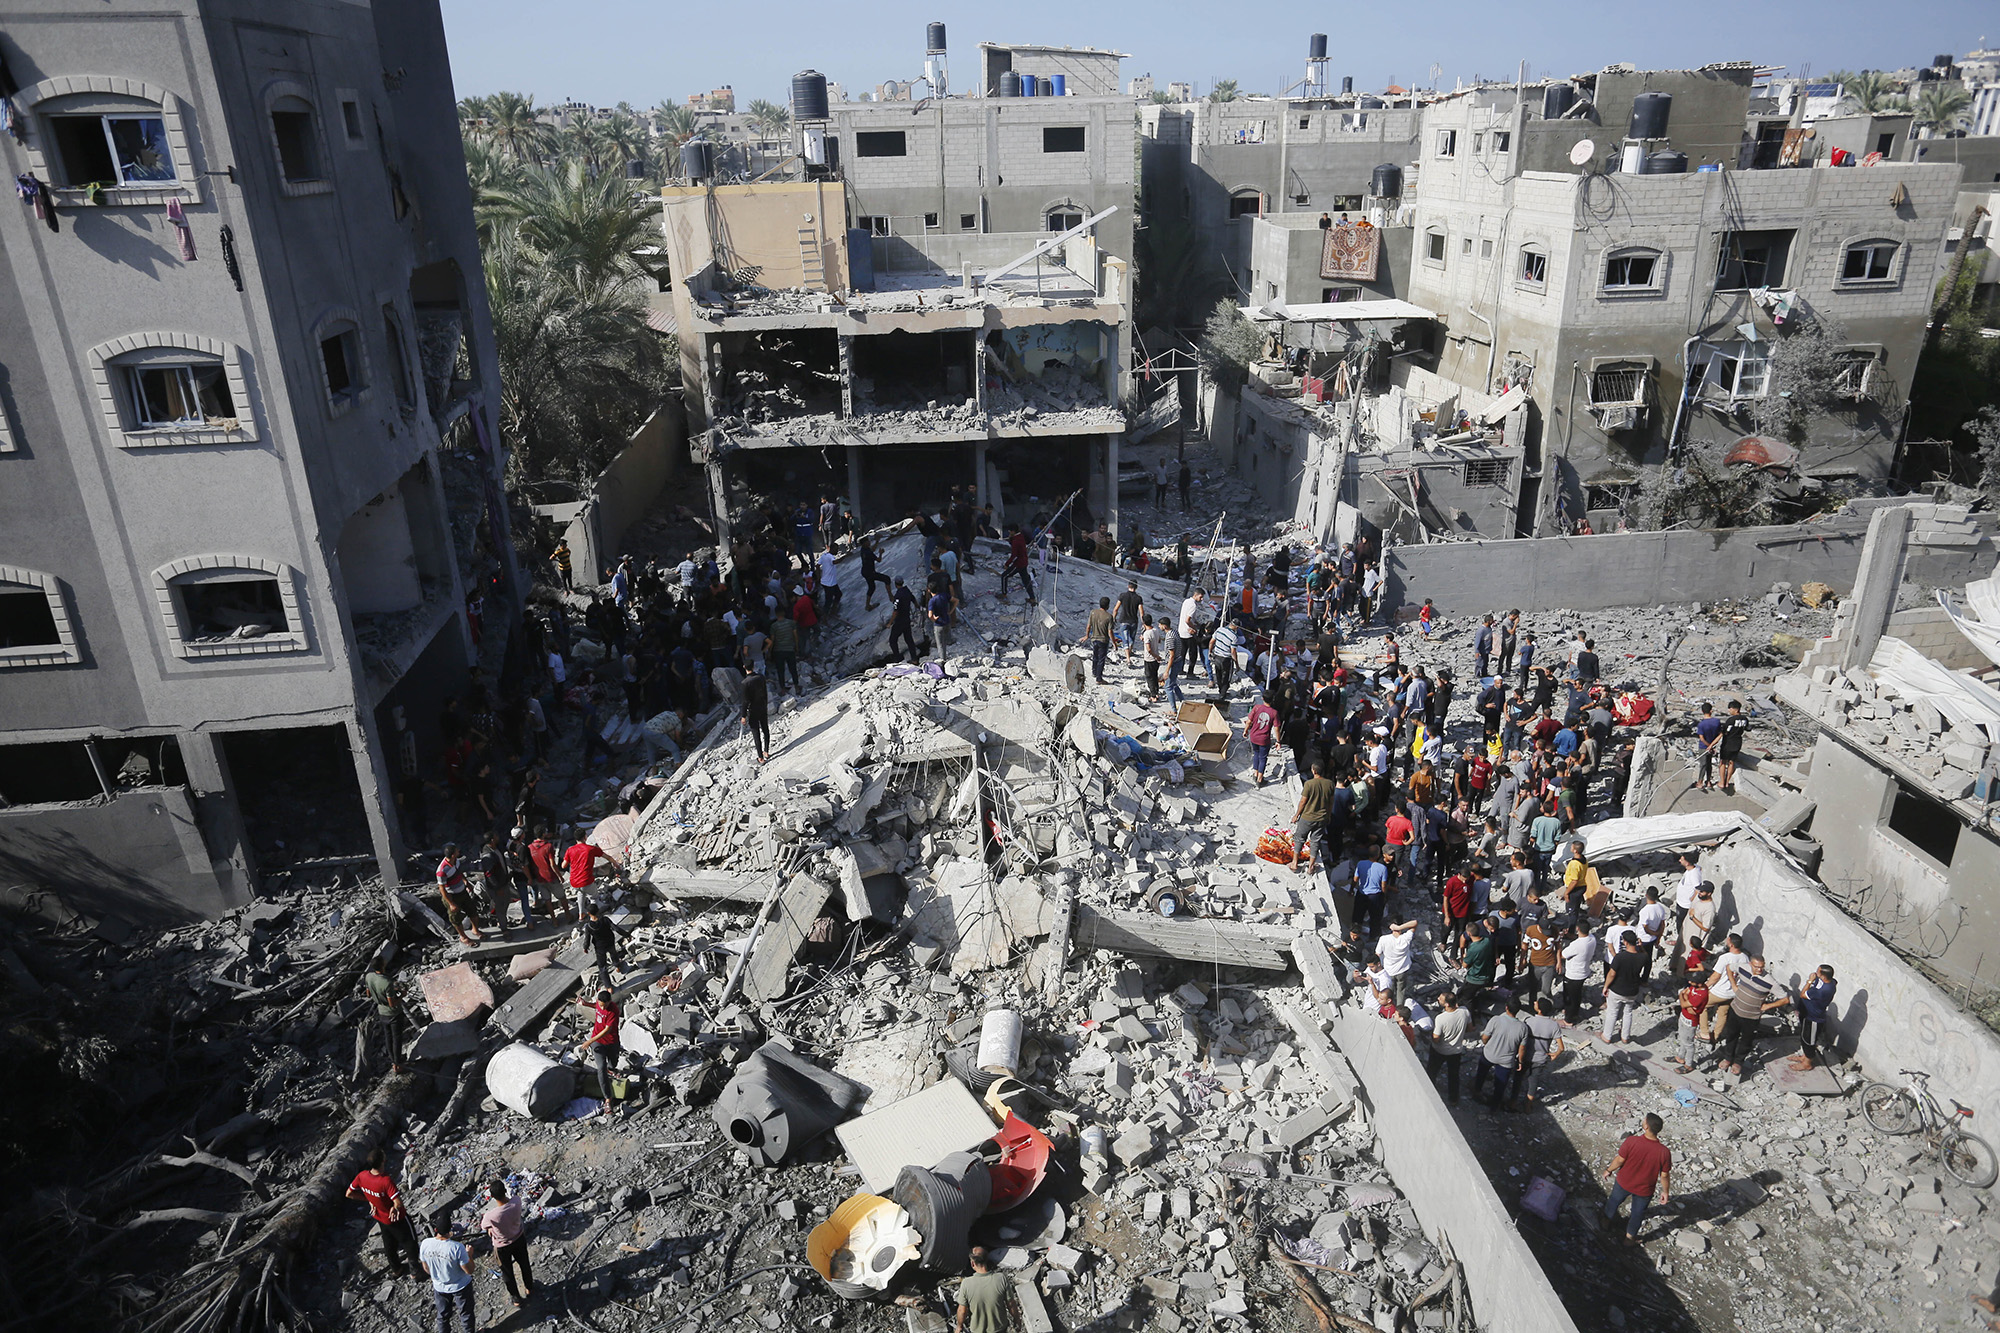 Continúan los esfuerzos para rescatar a los palestinos atrapados bajo los escombros de un edificio destruido por un ataque israelí en Deir Al Balah, Gaza, el 9 de noviembre. (Crédito: Ashraf Amra/Anadolu/Getty Images)